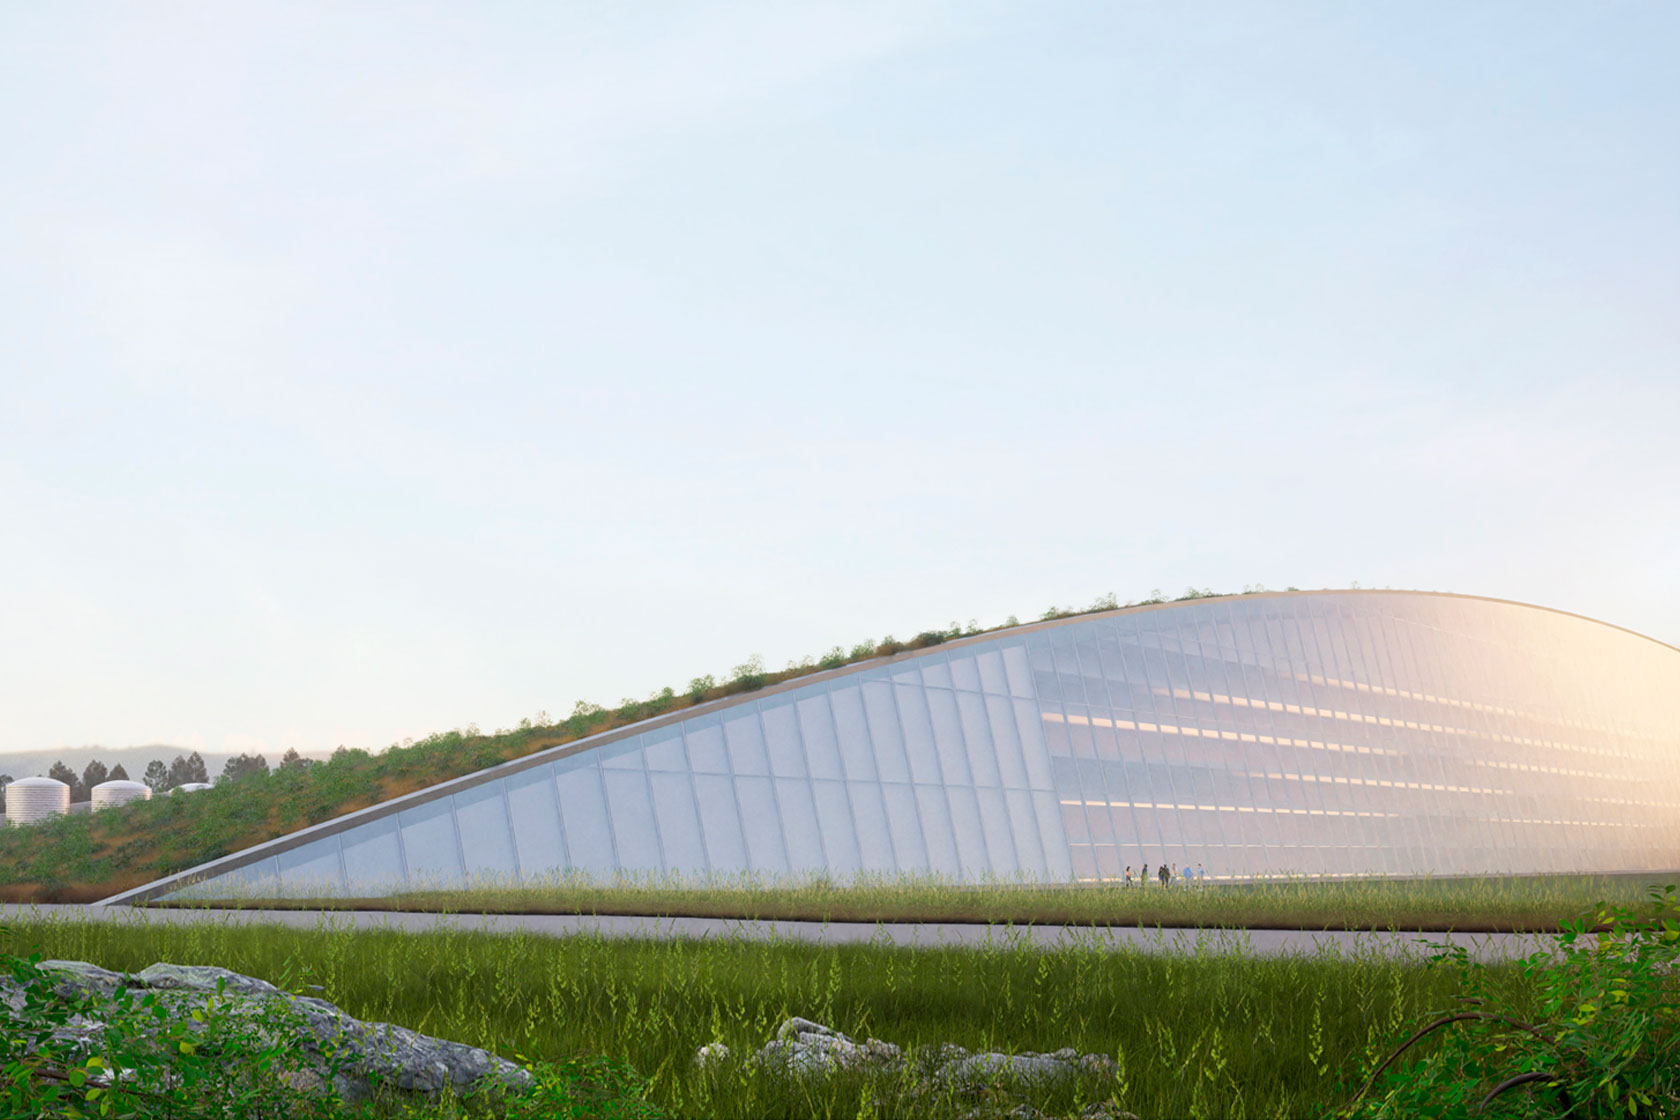 Ett förslag på design av SMR-byggnader. Den stora böjda byggnadsvolymen med långsträckt grönt tak framstår som en kulle i landskapet